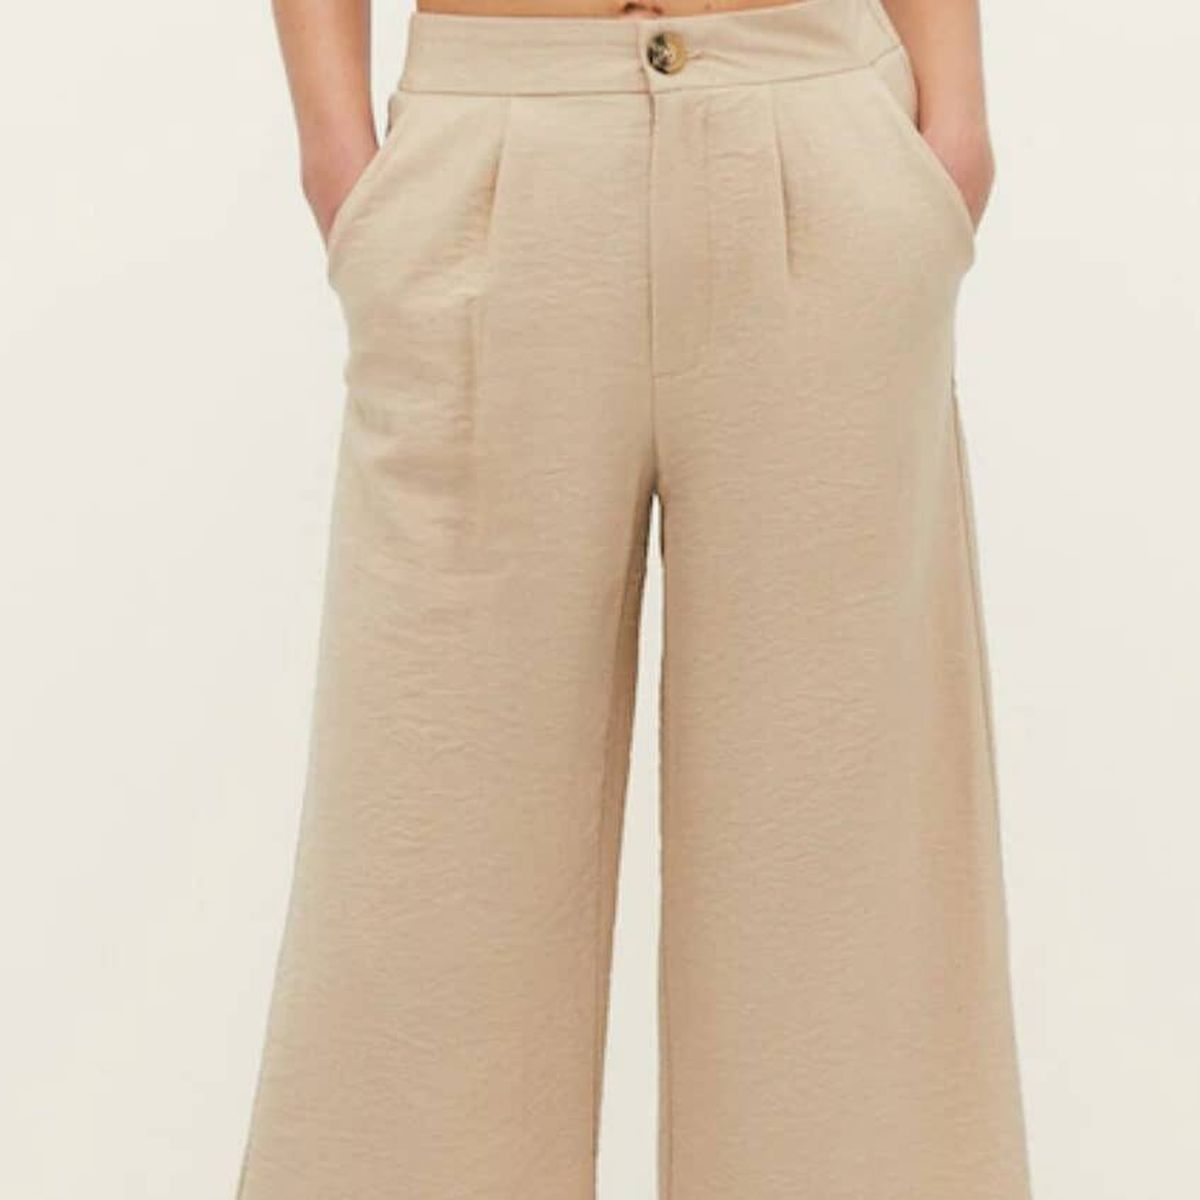 Los pantalones de lino low cost que necesitas para ir cómoda y fresquita  este verano